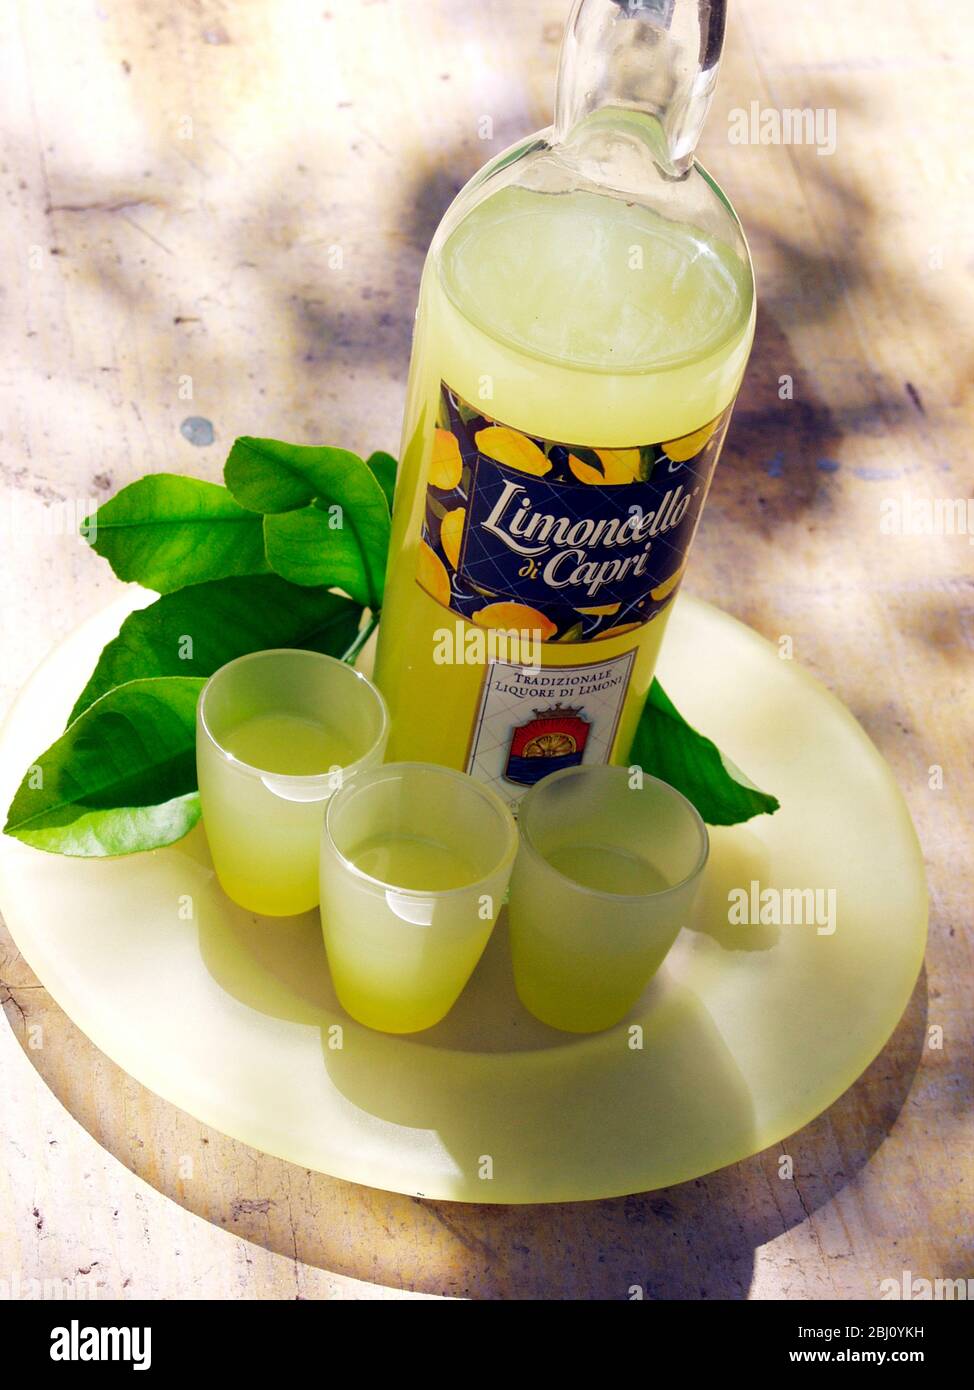 Botella de licor de limoncello con tres vasos - Foto de stock